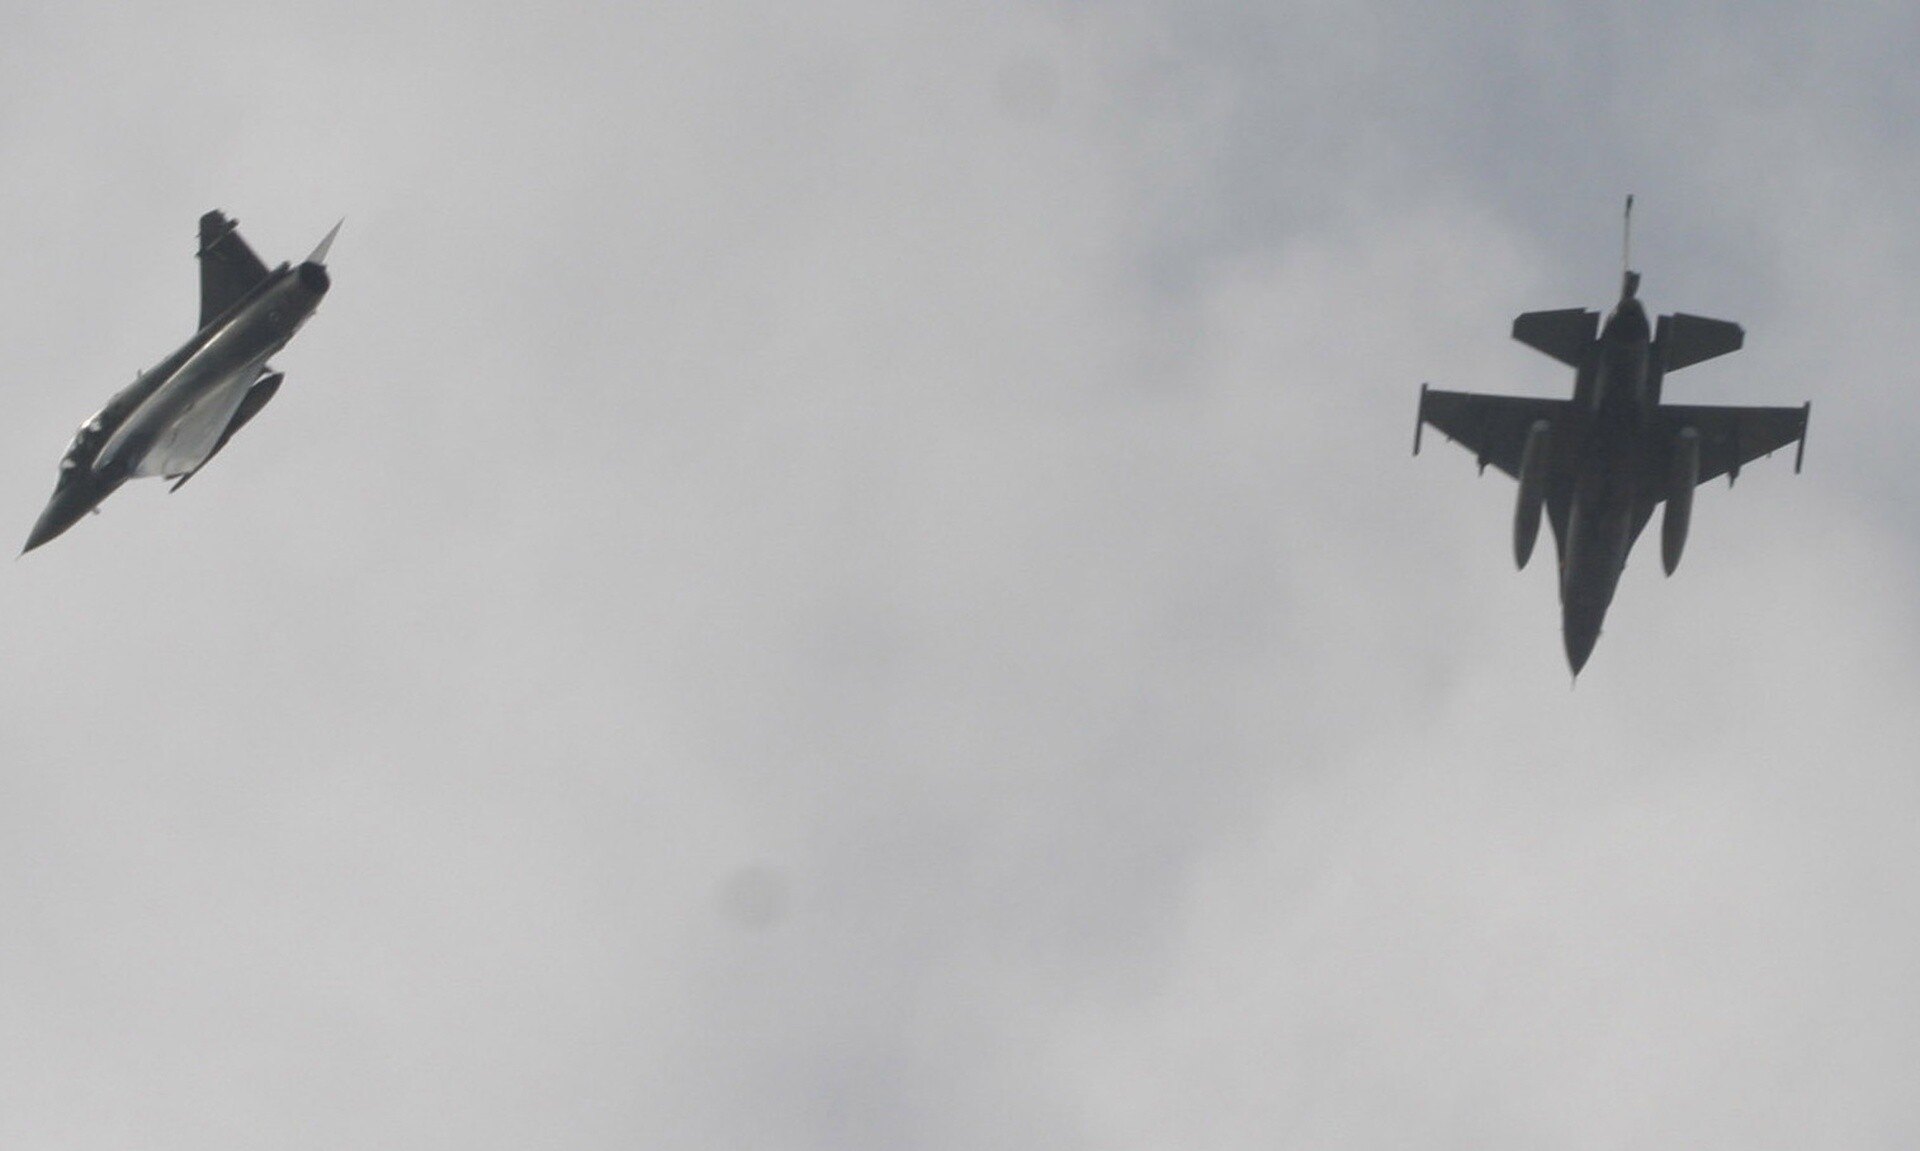 Πότε θα πάρει η Τουρκία τα F-16: Αμερικανική απάντηση παρά την ακύρωση της συνάντησης